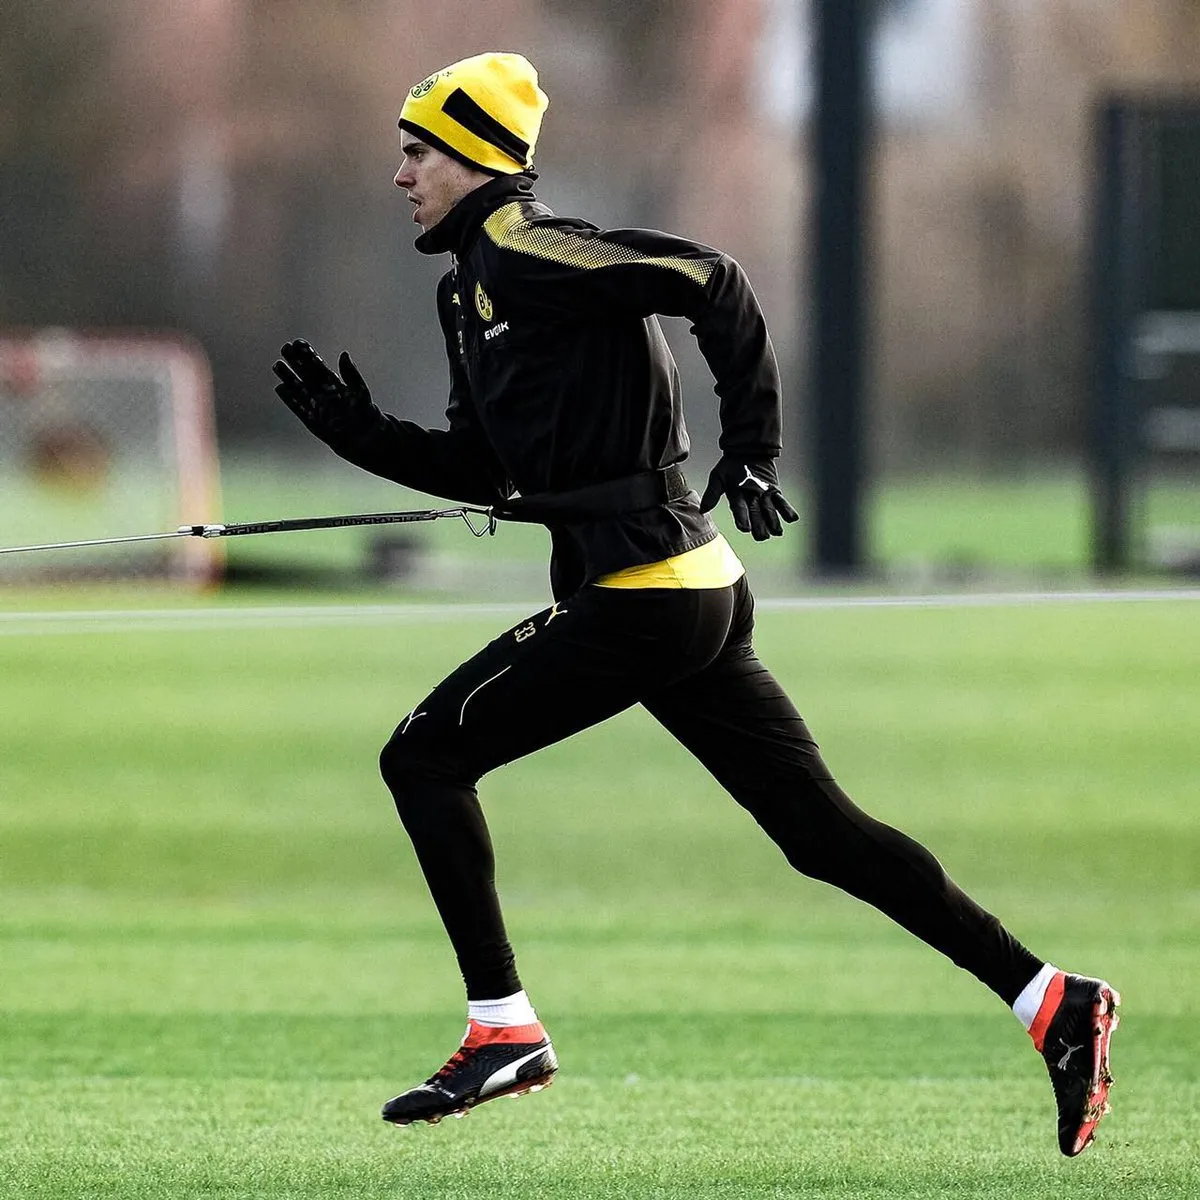 NÓNG: Marco Reus có thể trở lại cuối tuần này - Bóng Đá